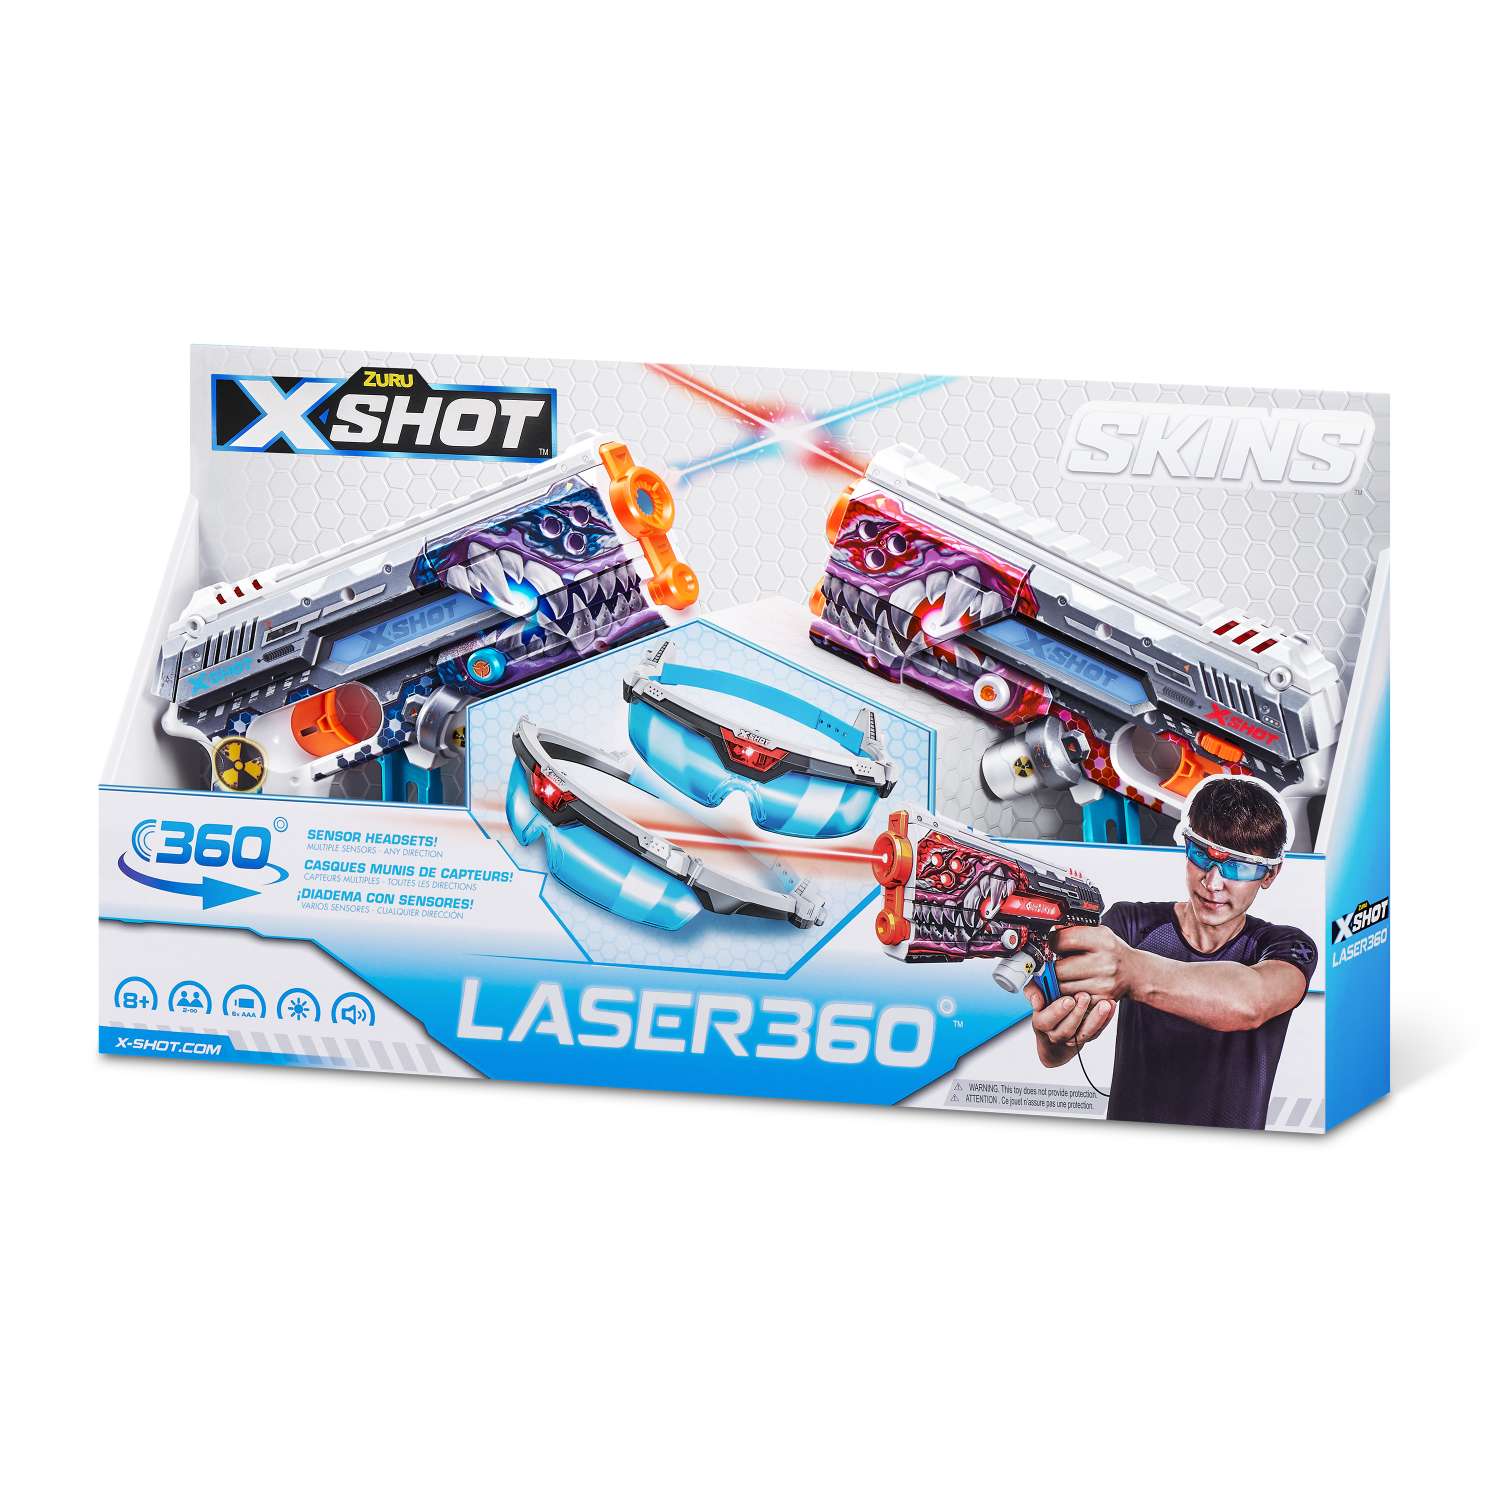 Набор игровой X-Shot Laser Skins Laser360 36602 - фото 20